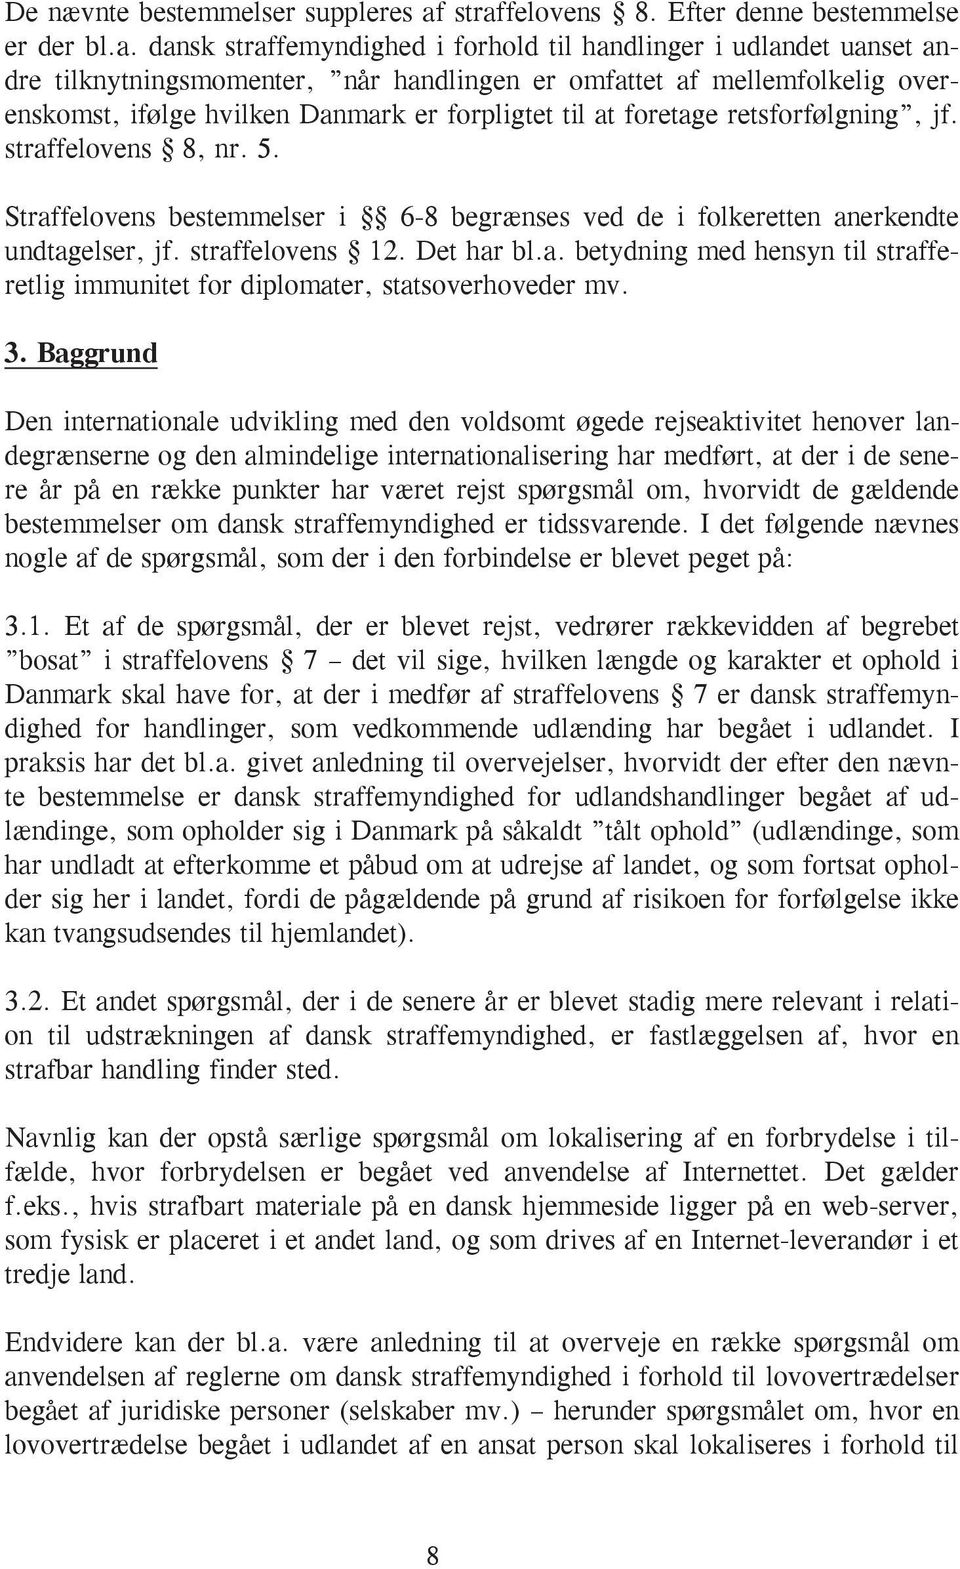 overenskomst, ifølge hvilken Danmark er forpligtet til at foretage retsforfølgning, jf. straffelovens 8, nr. 5.